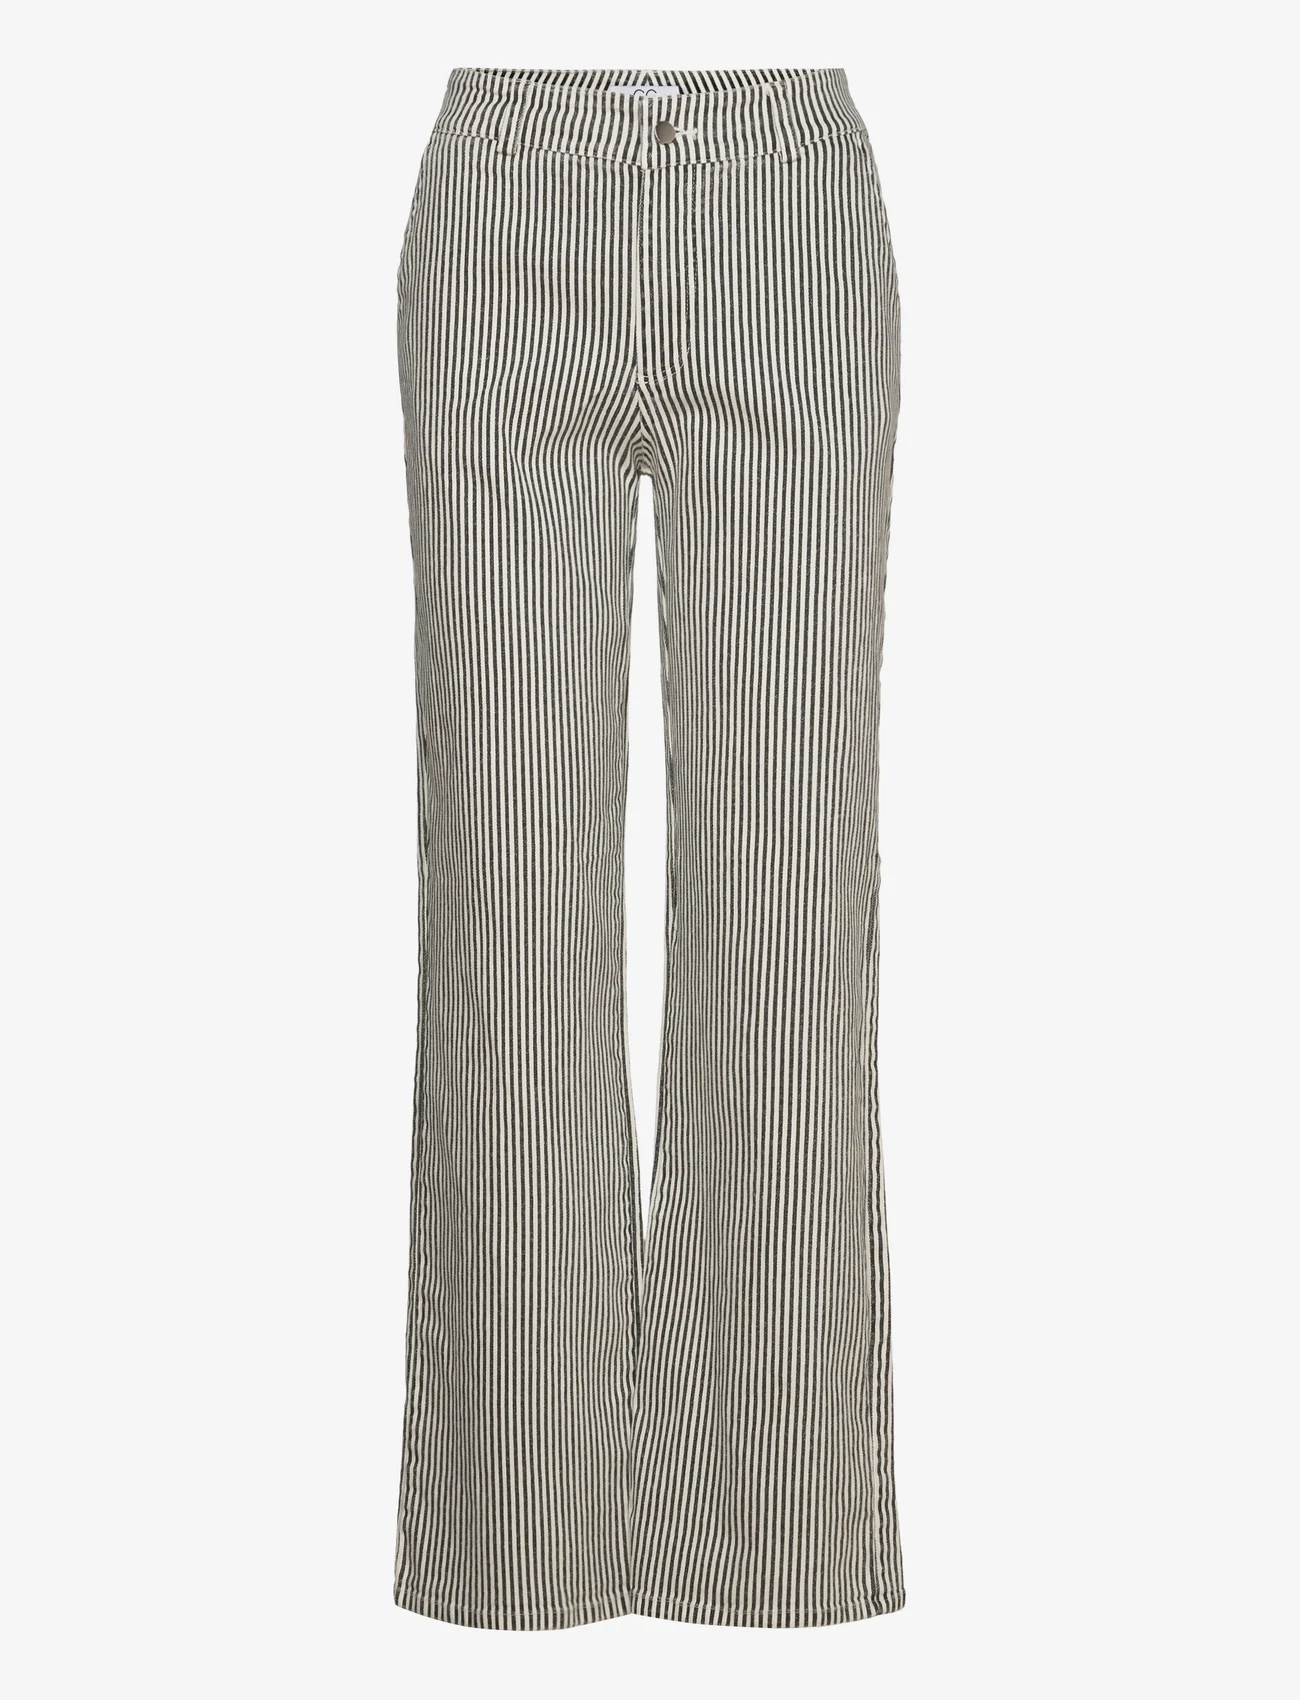 Coster Copenhagen - CC Heart MATHILDE striped pants - festmode zu outlet-preisen - off white/black stripe - 0